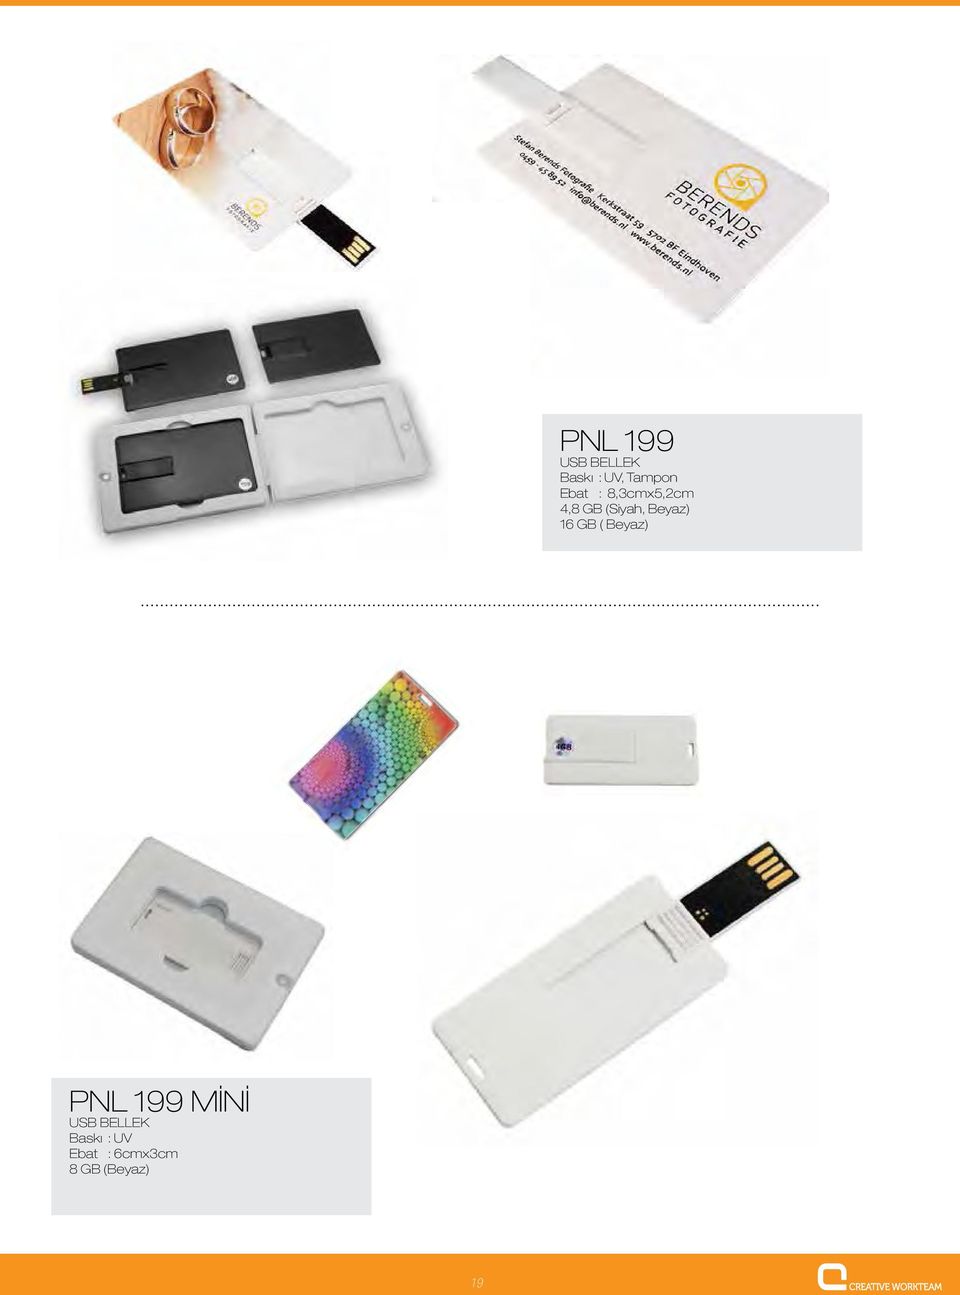 Beyaz) 16 GB ( Beyaz) PNL 199 MİNİ USB